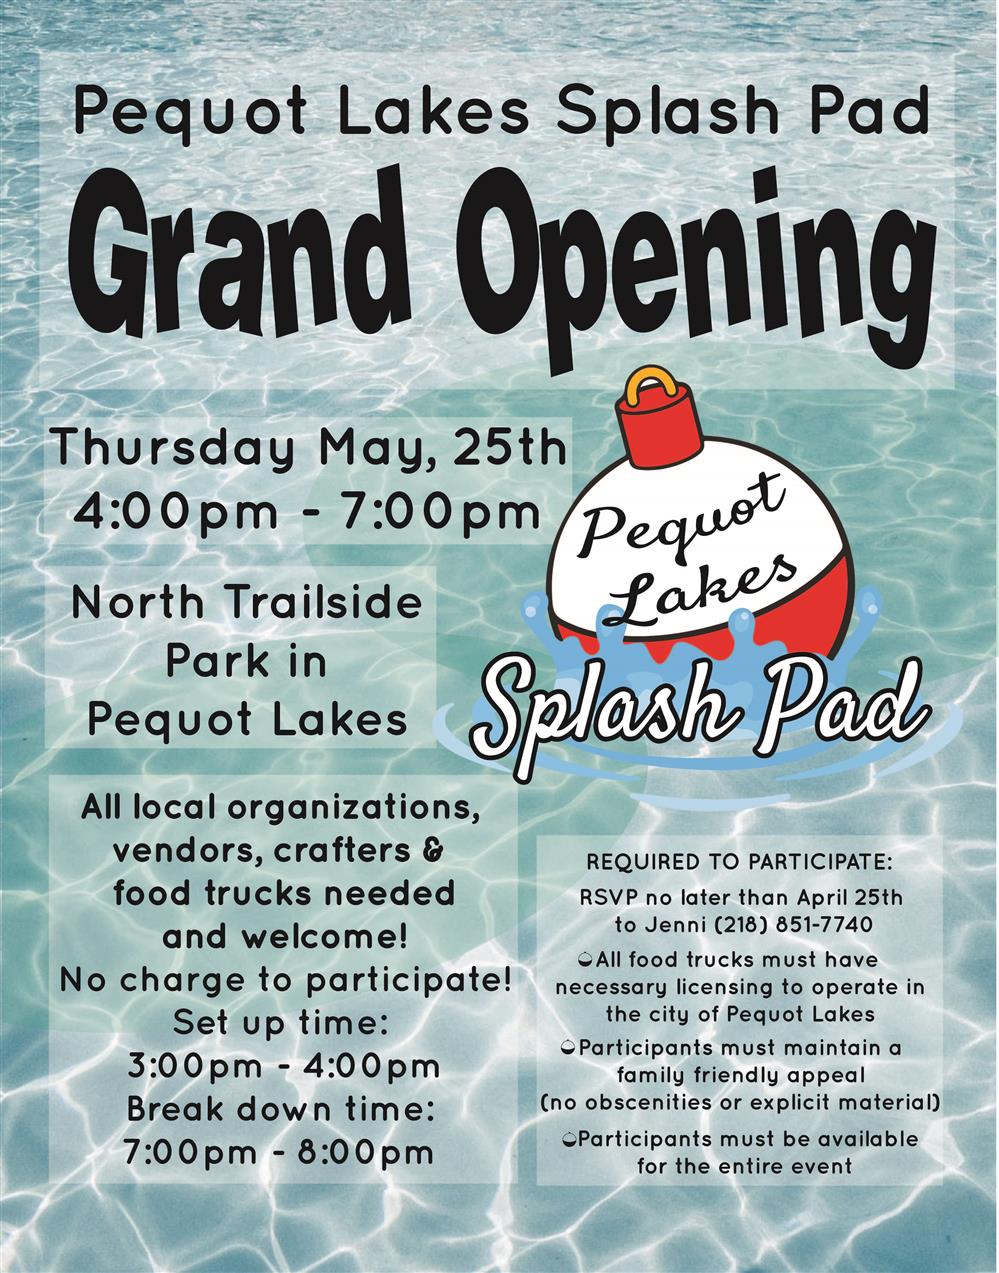 Grand Opening - Pequot Lakes Splash Pad